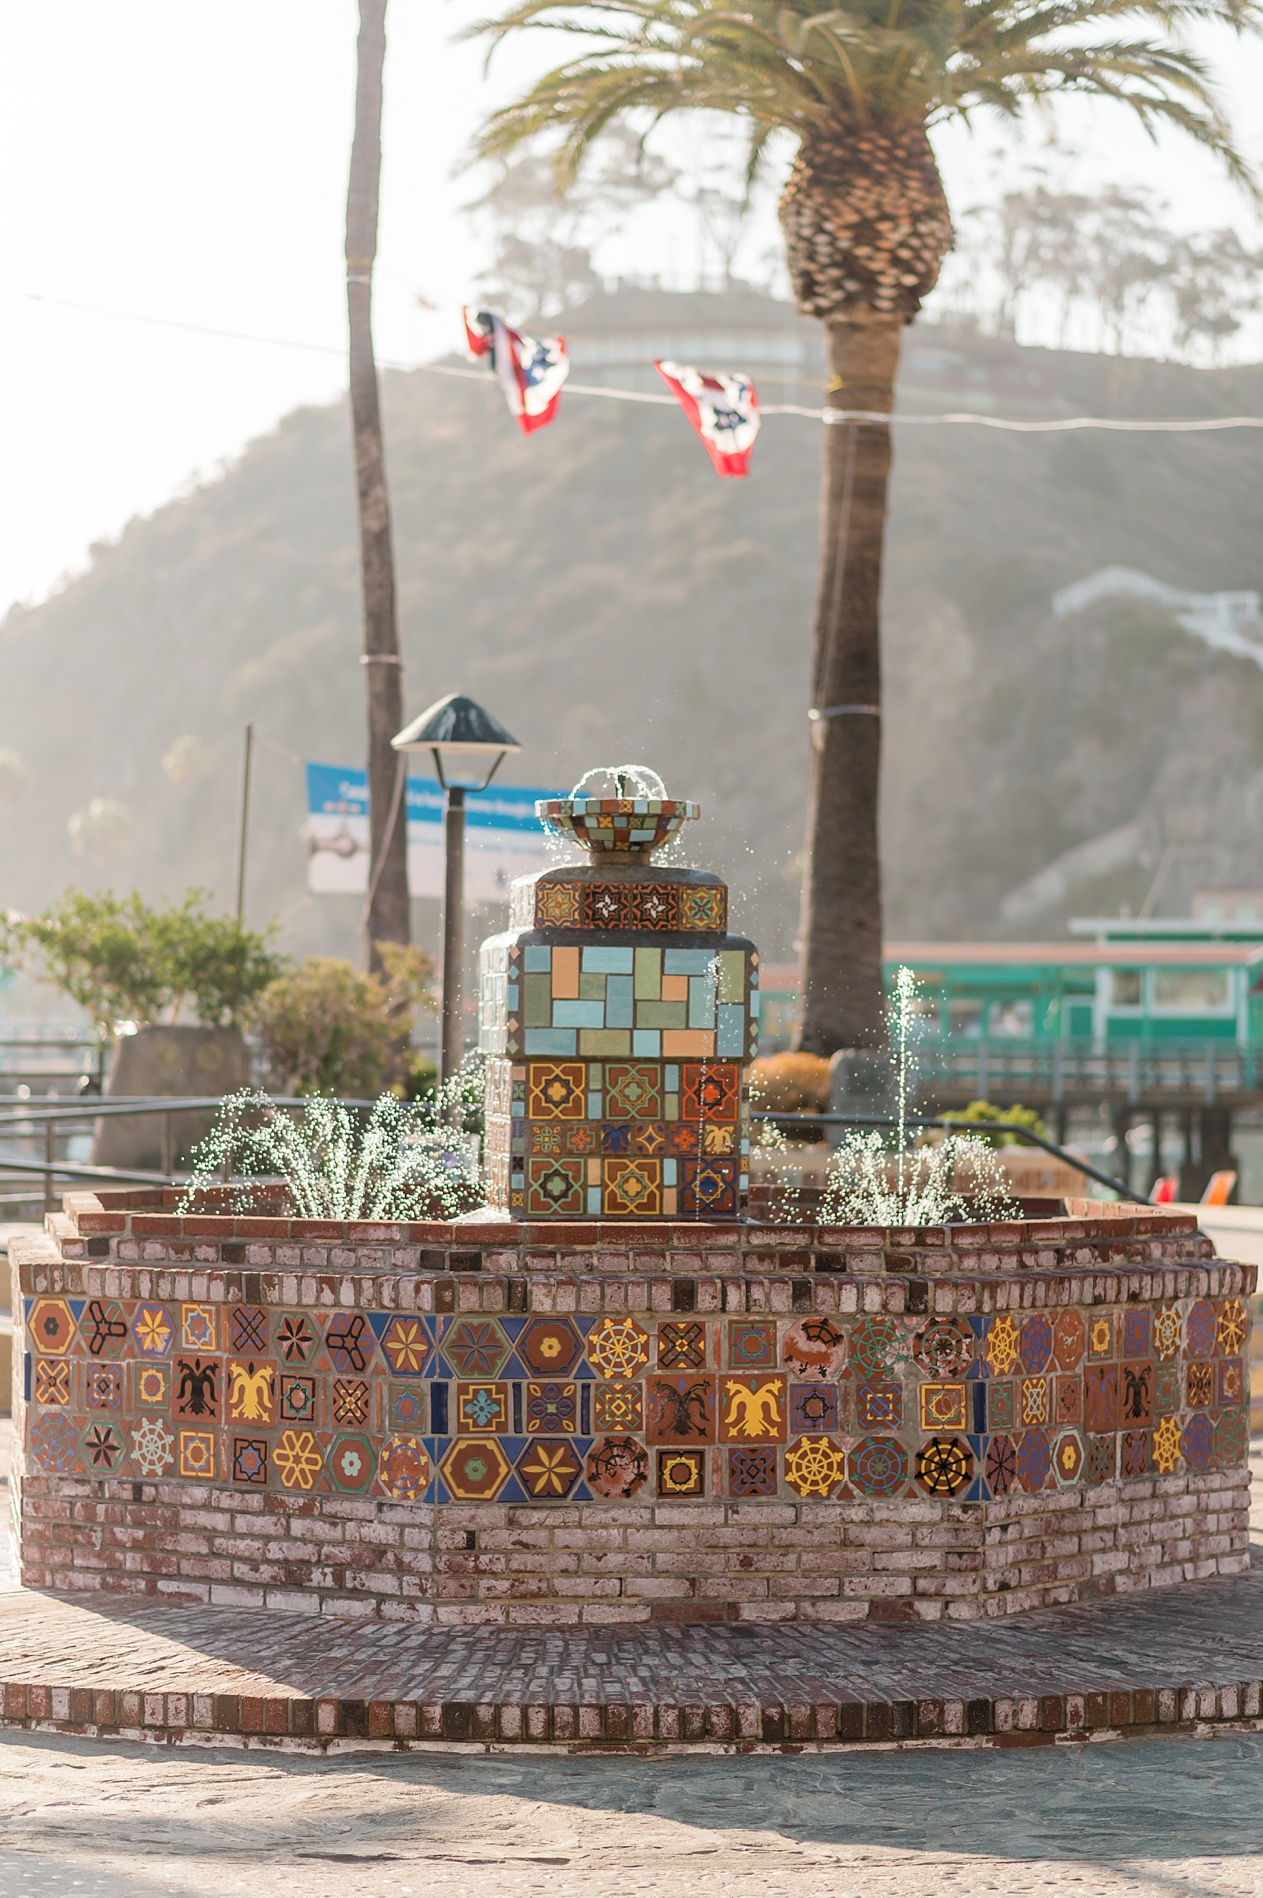 Catalina Island - Los Angeles, California